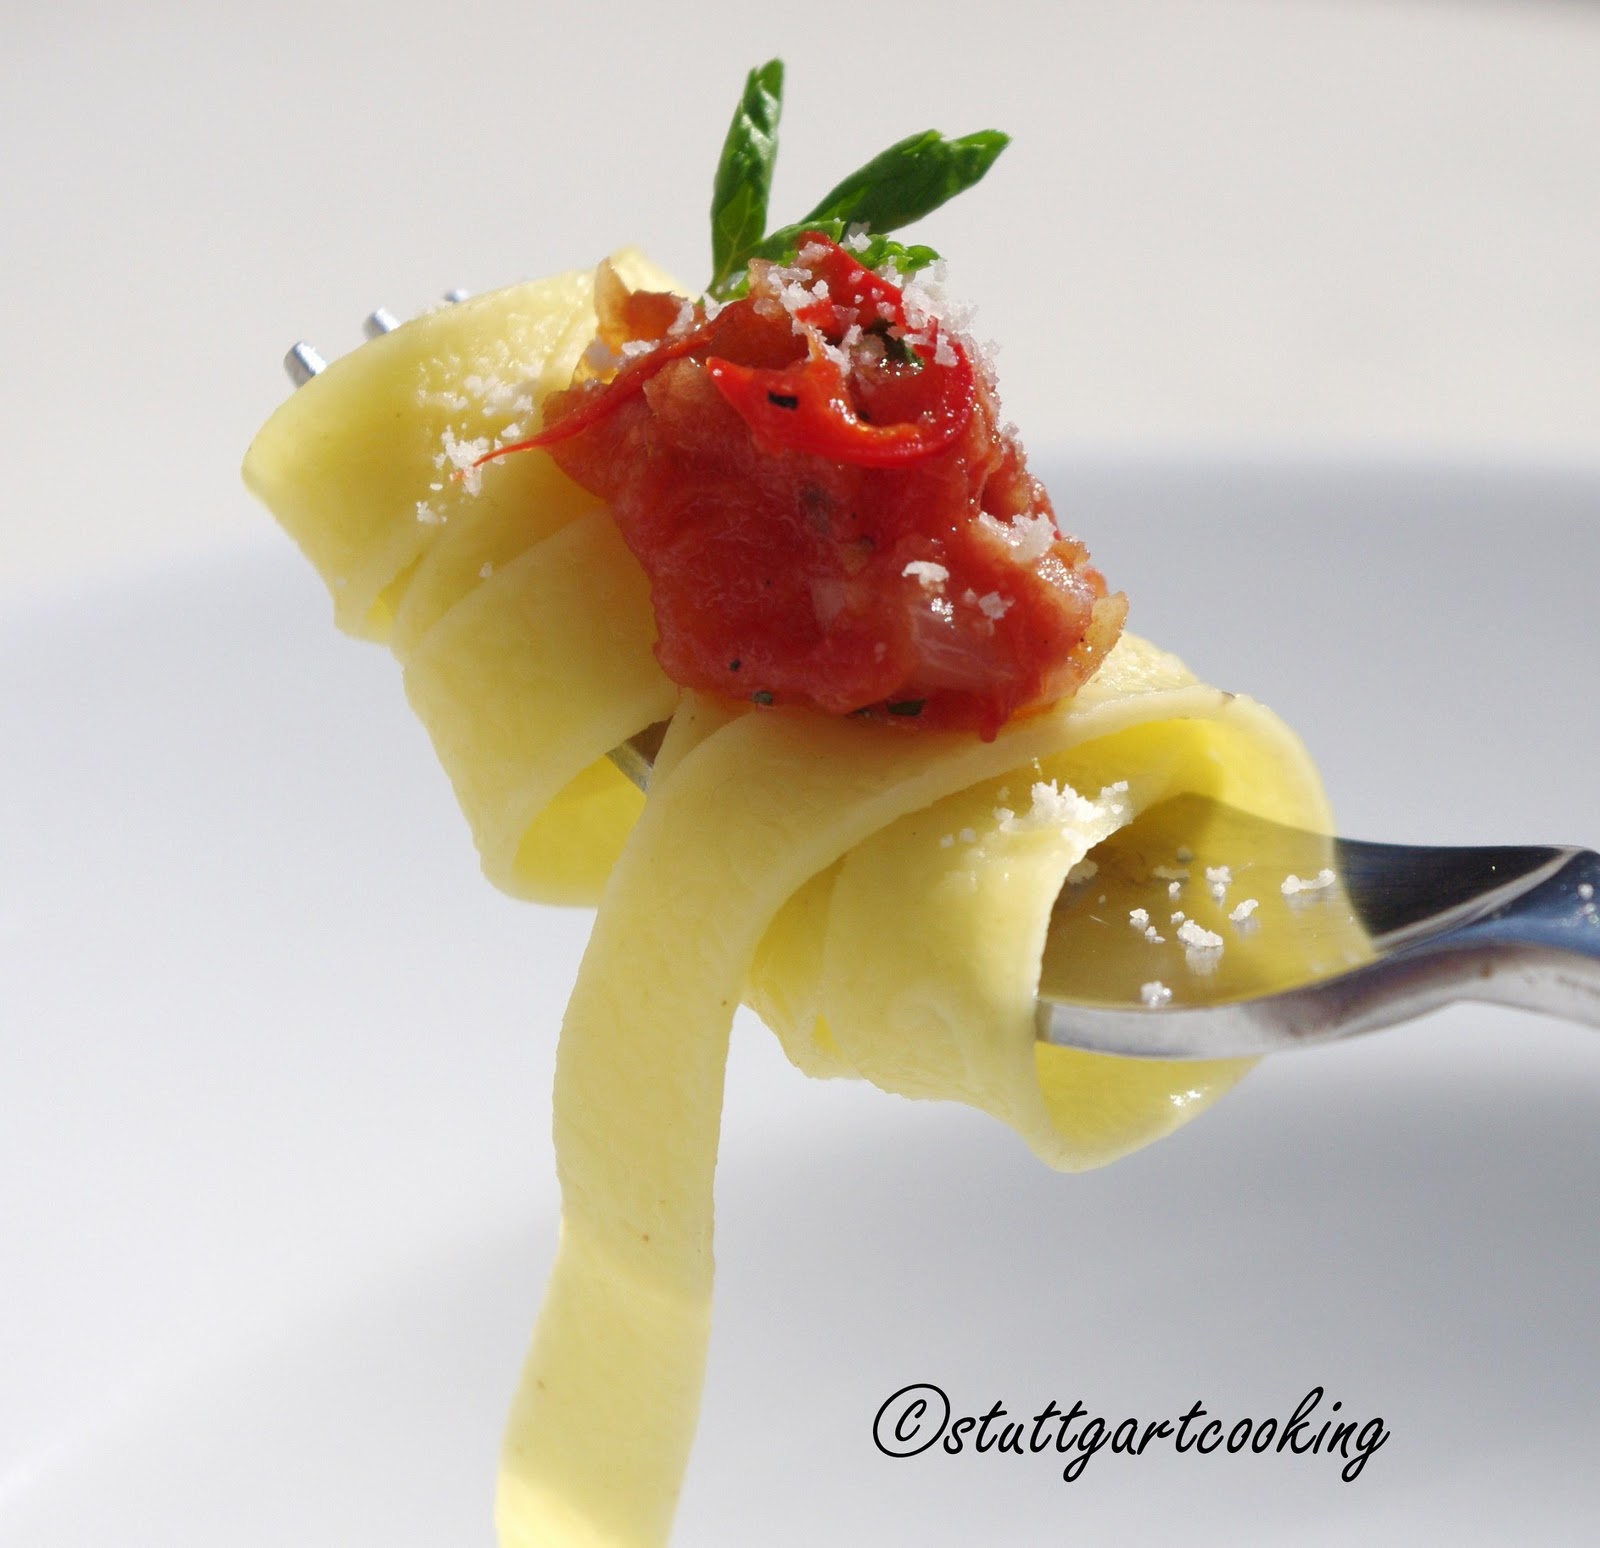 stuttgartcooking: Pasta All’Arrabbiata oder Nudeln mit scharfer Sauce